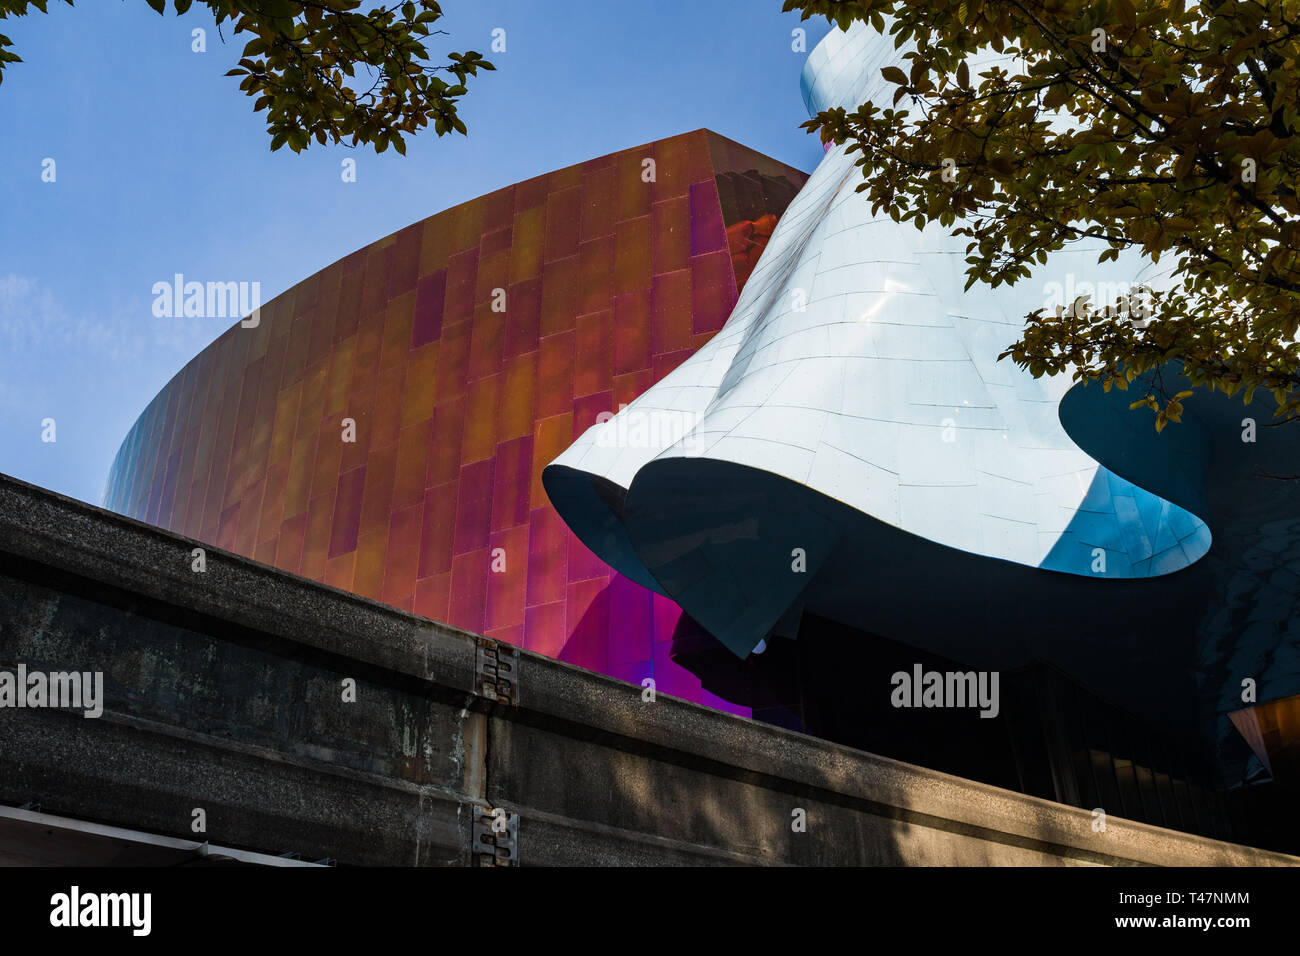 Détails de l'univers coloré et des murs du musée de la culture pop de Seattle, Washington, USA Banque D'Images